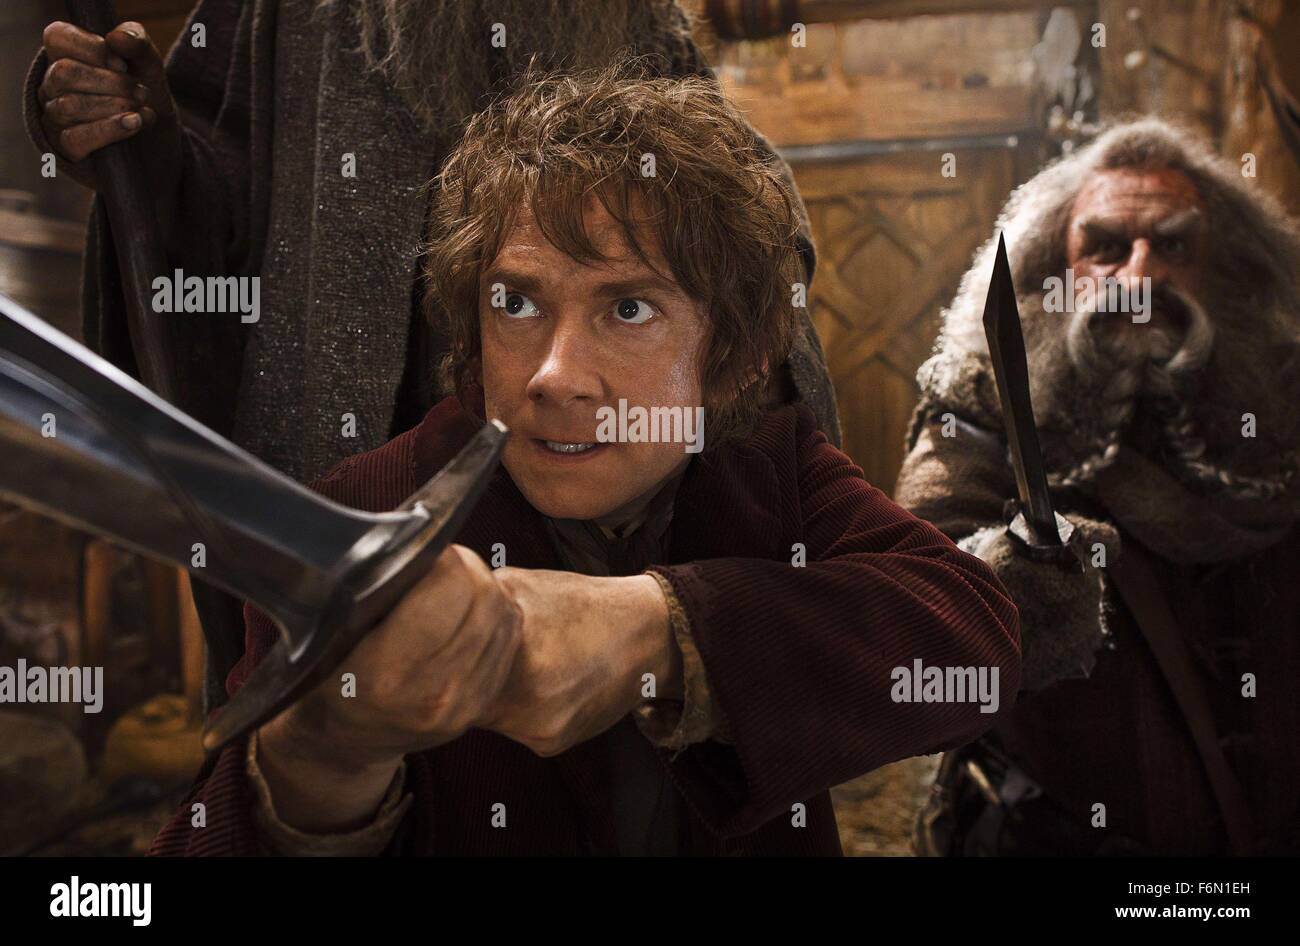 El actor Martin Freeman en una escena de El Hobbit: la desolación de Smaug película dirigida por Peter Jackson. (Crédito: c/MGM Entertainment Pictures) Foto de stock